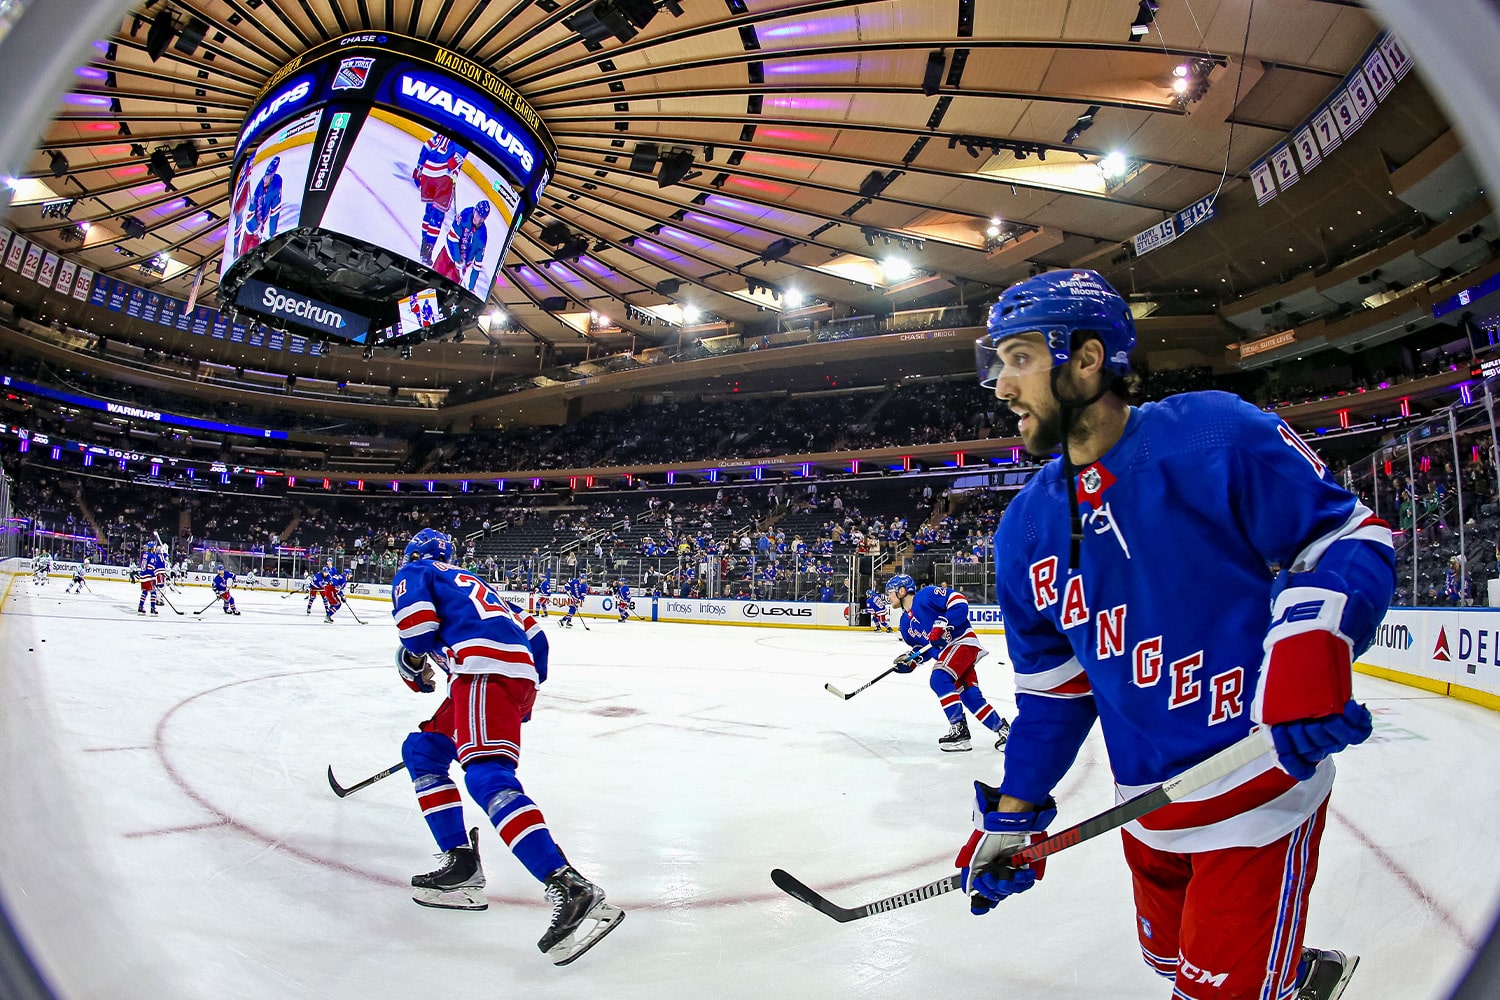 Rangers Sale Items  Shop Madison Square Garden